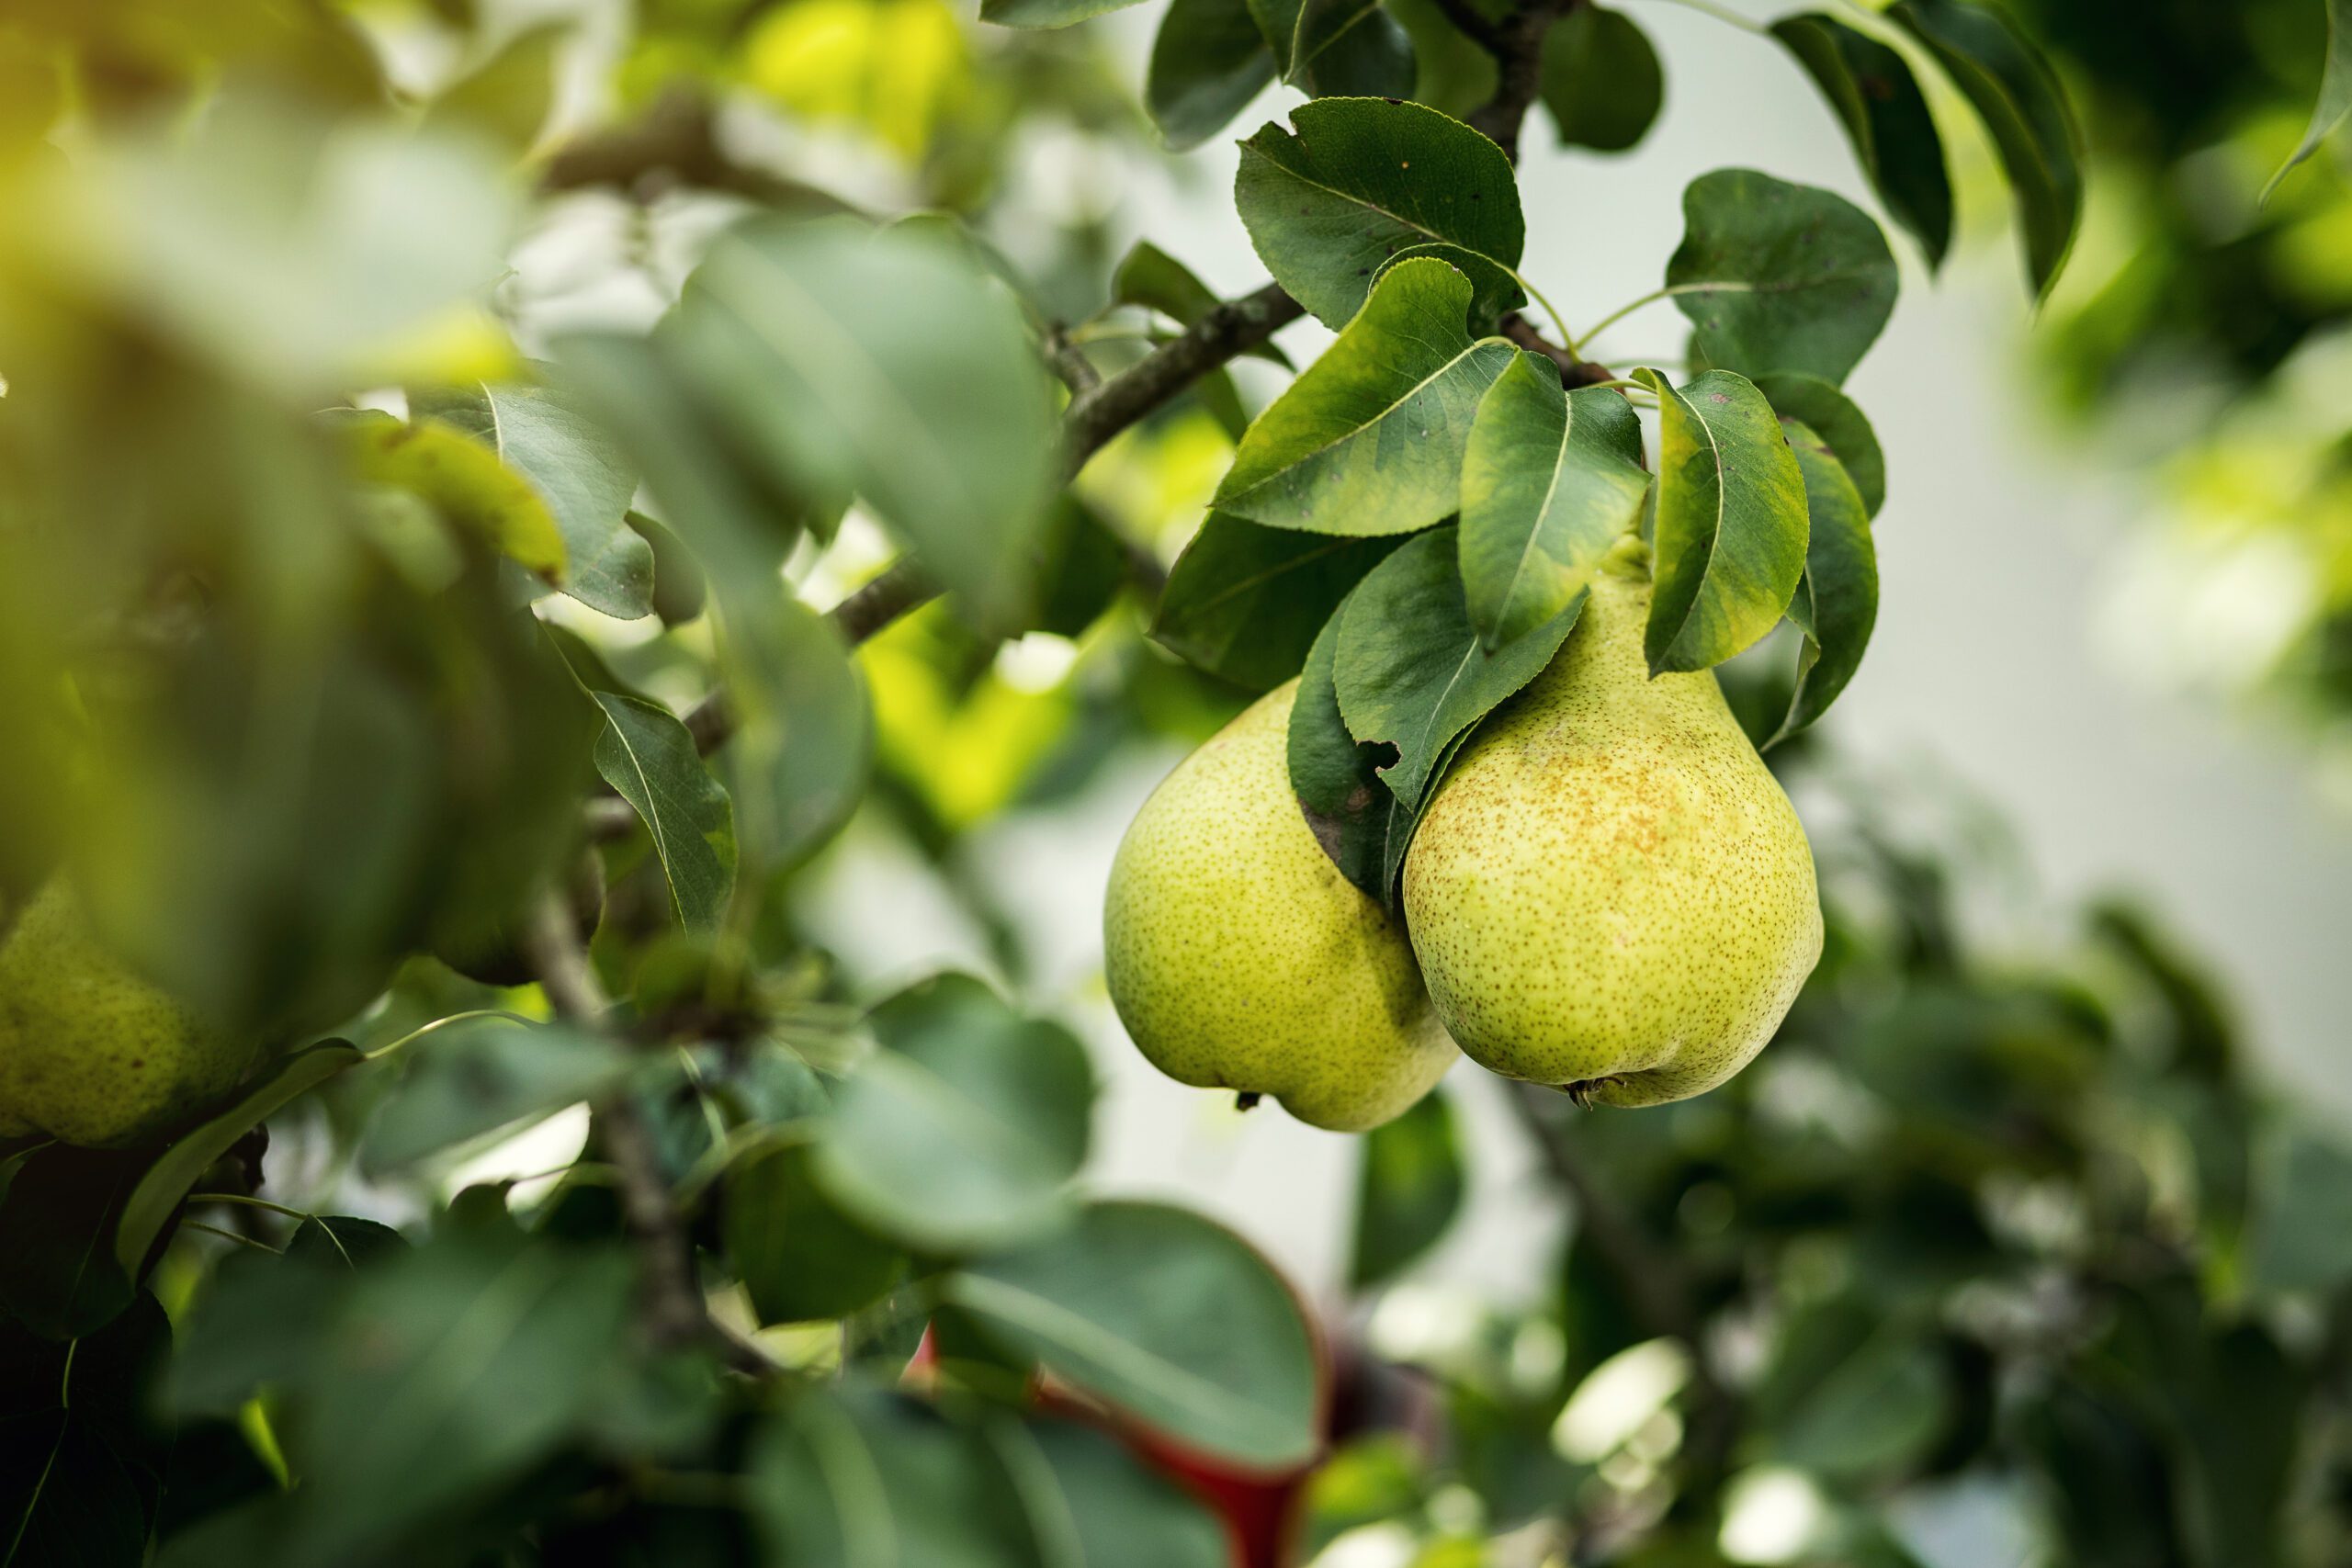 Pear crops